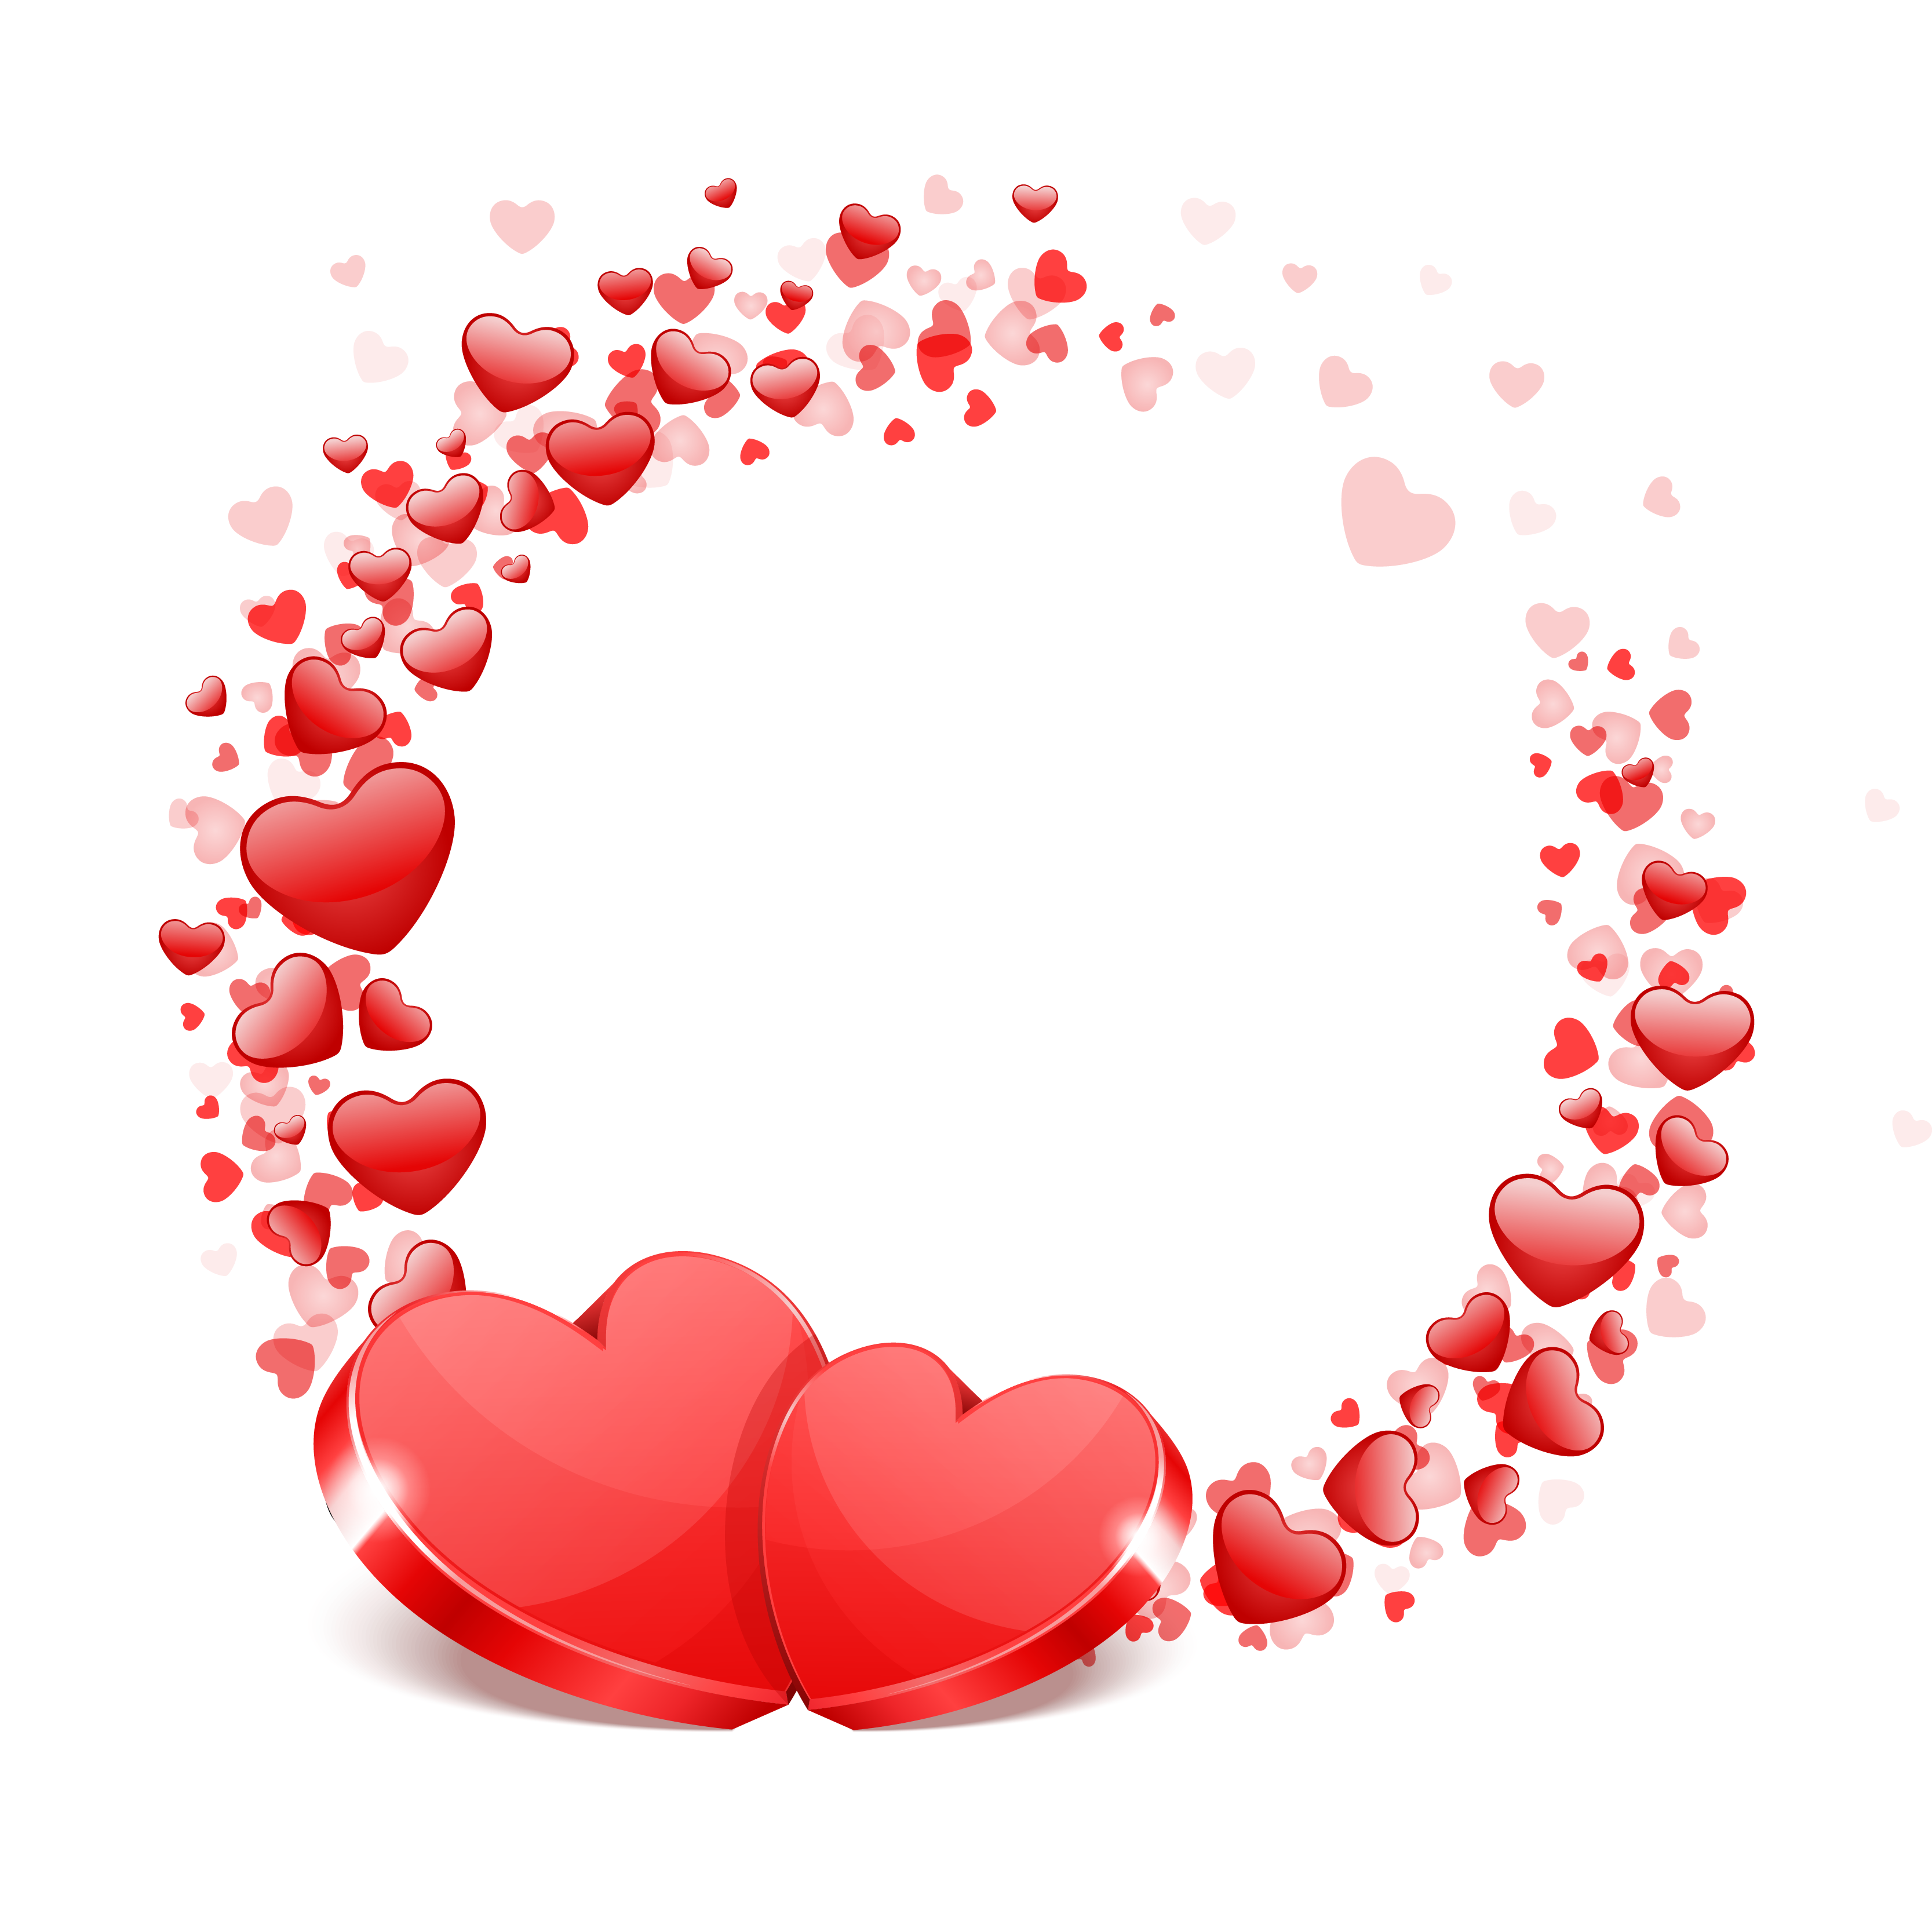 Hãy cùng tải xuống Vector trái tim Valentine với chất lượng cao HQ PNG. Làm cho tình yêu của bạn trở nên dịu ngọt hơn bao giờ hết bằng những hình ảnh đầy cảm xúc nhất!